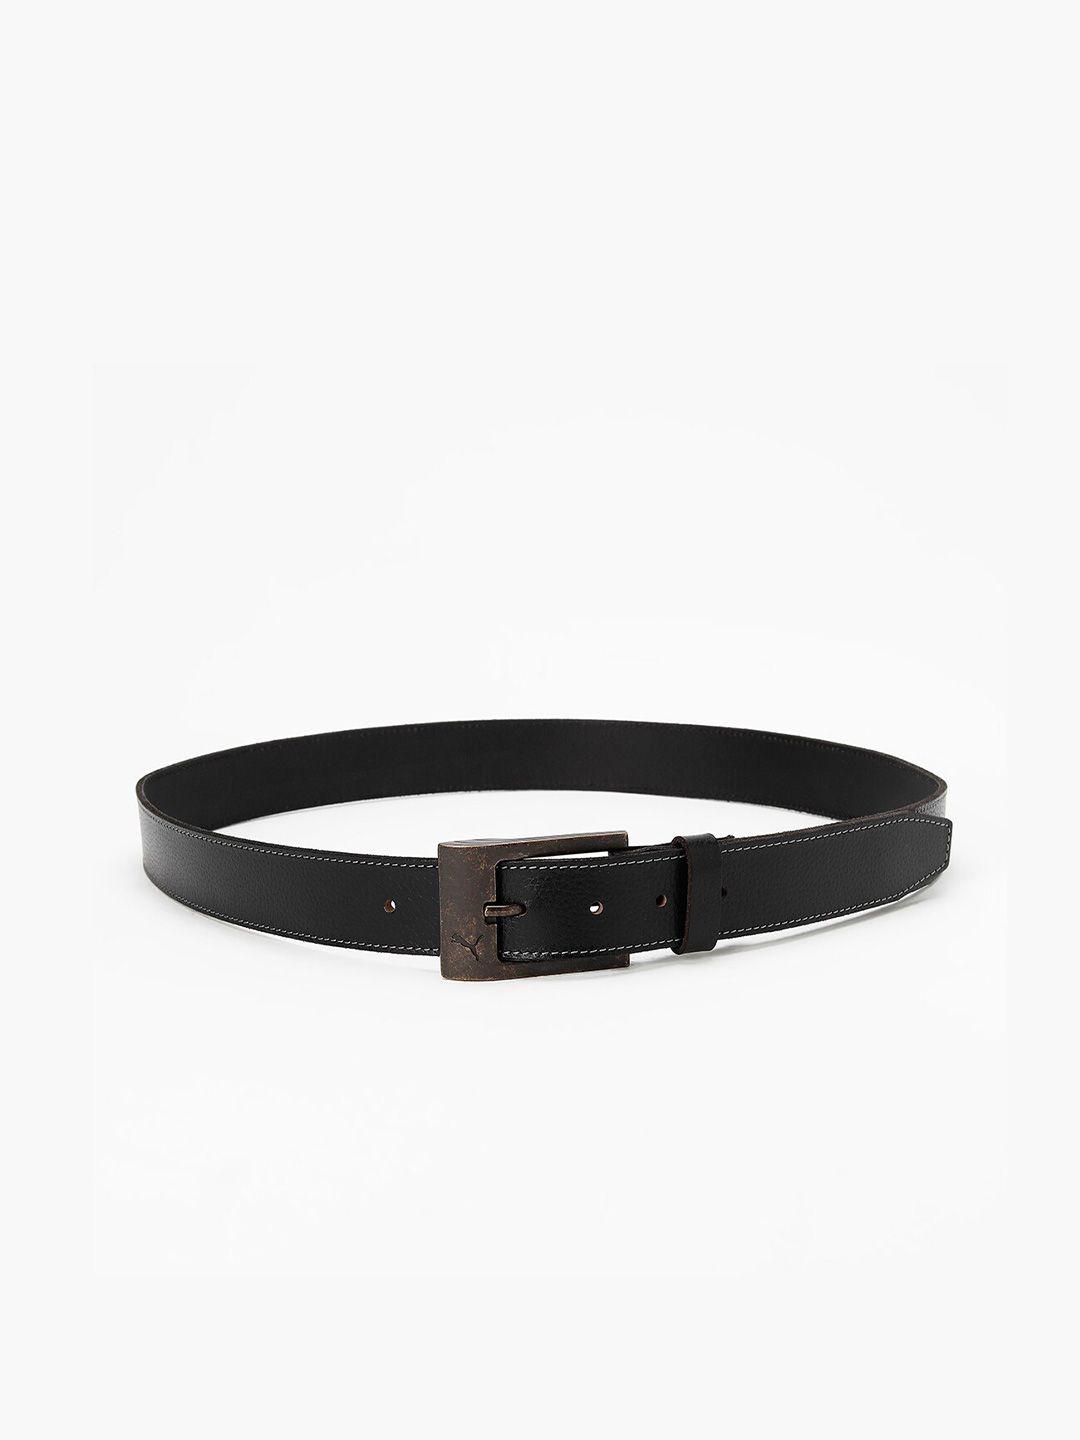 puma-stylised-textured-genuine-leather-belt